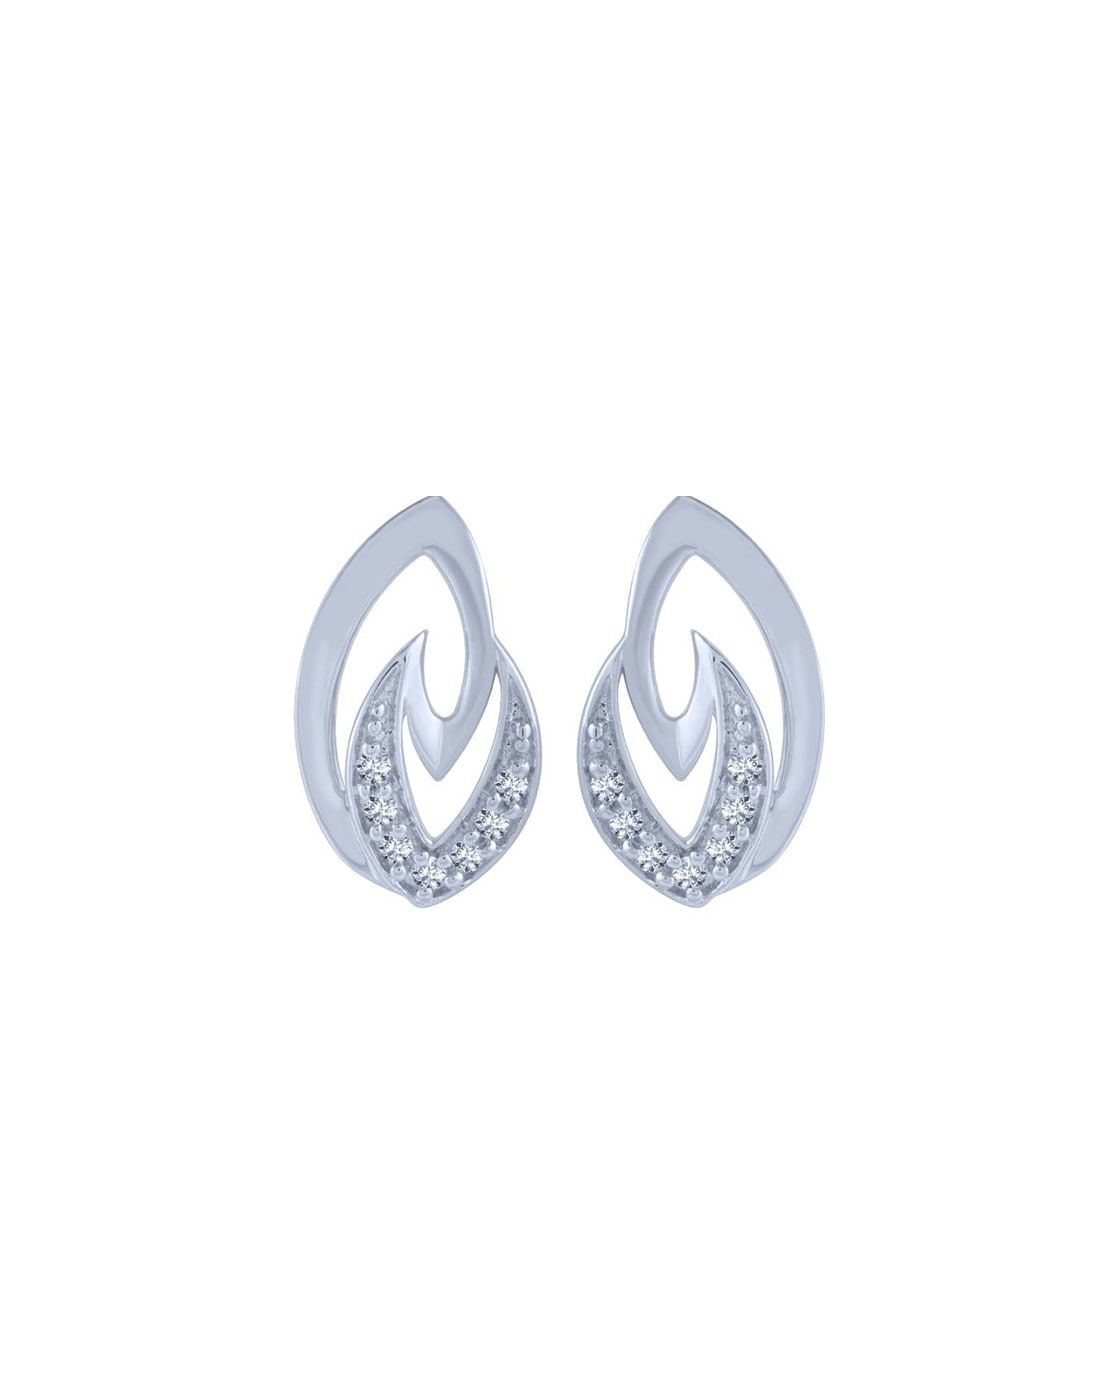 Buy Platinum Earrings PT2460 Online in India  Garner Bears